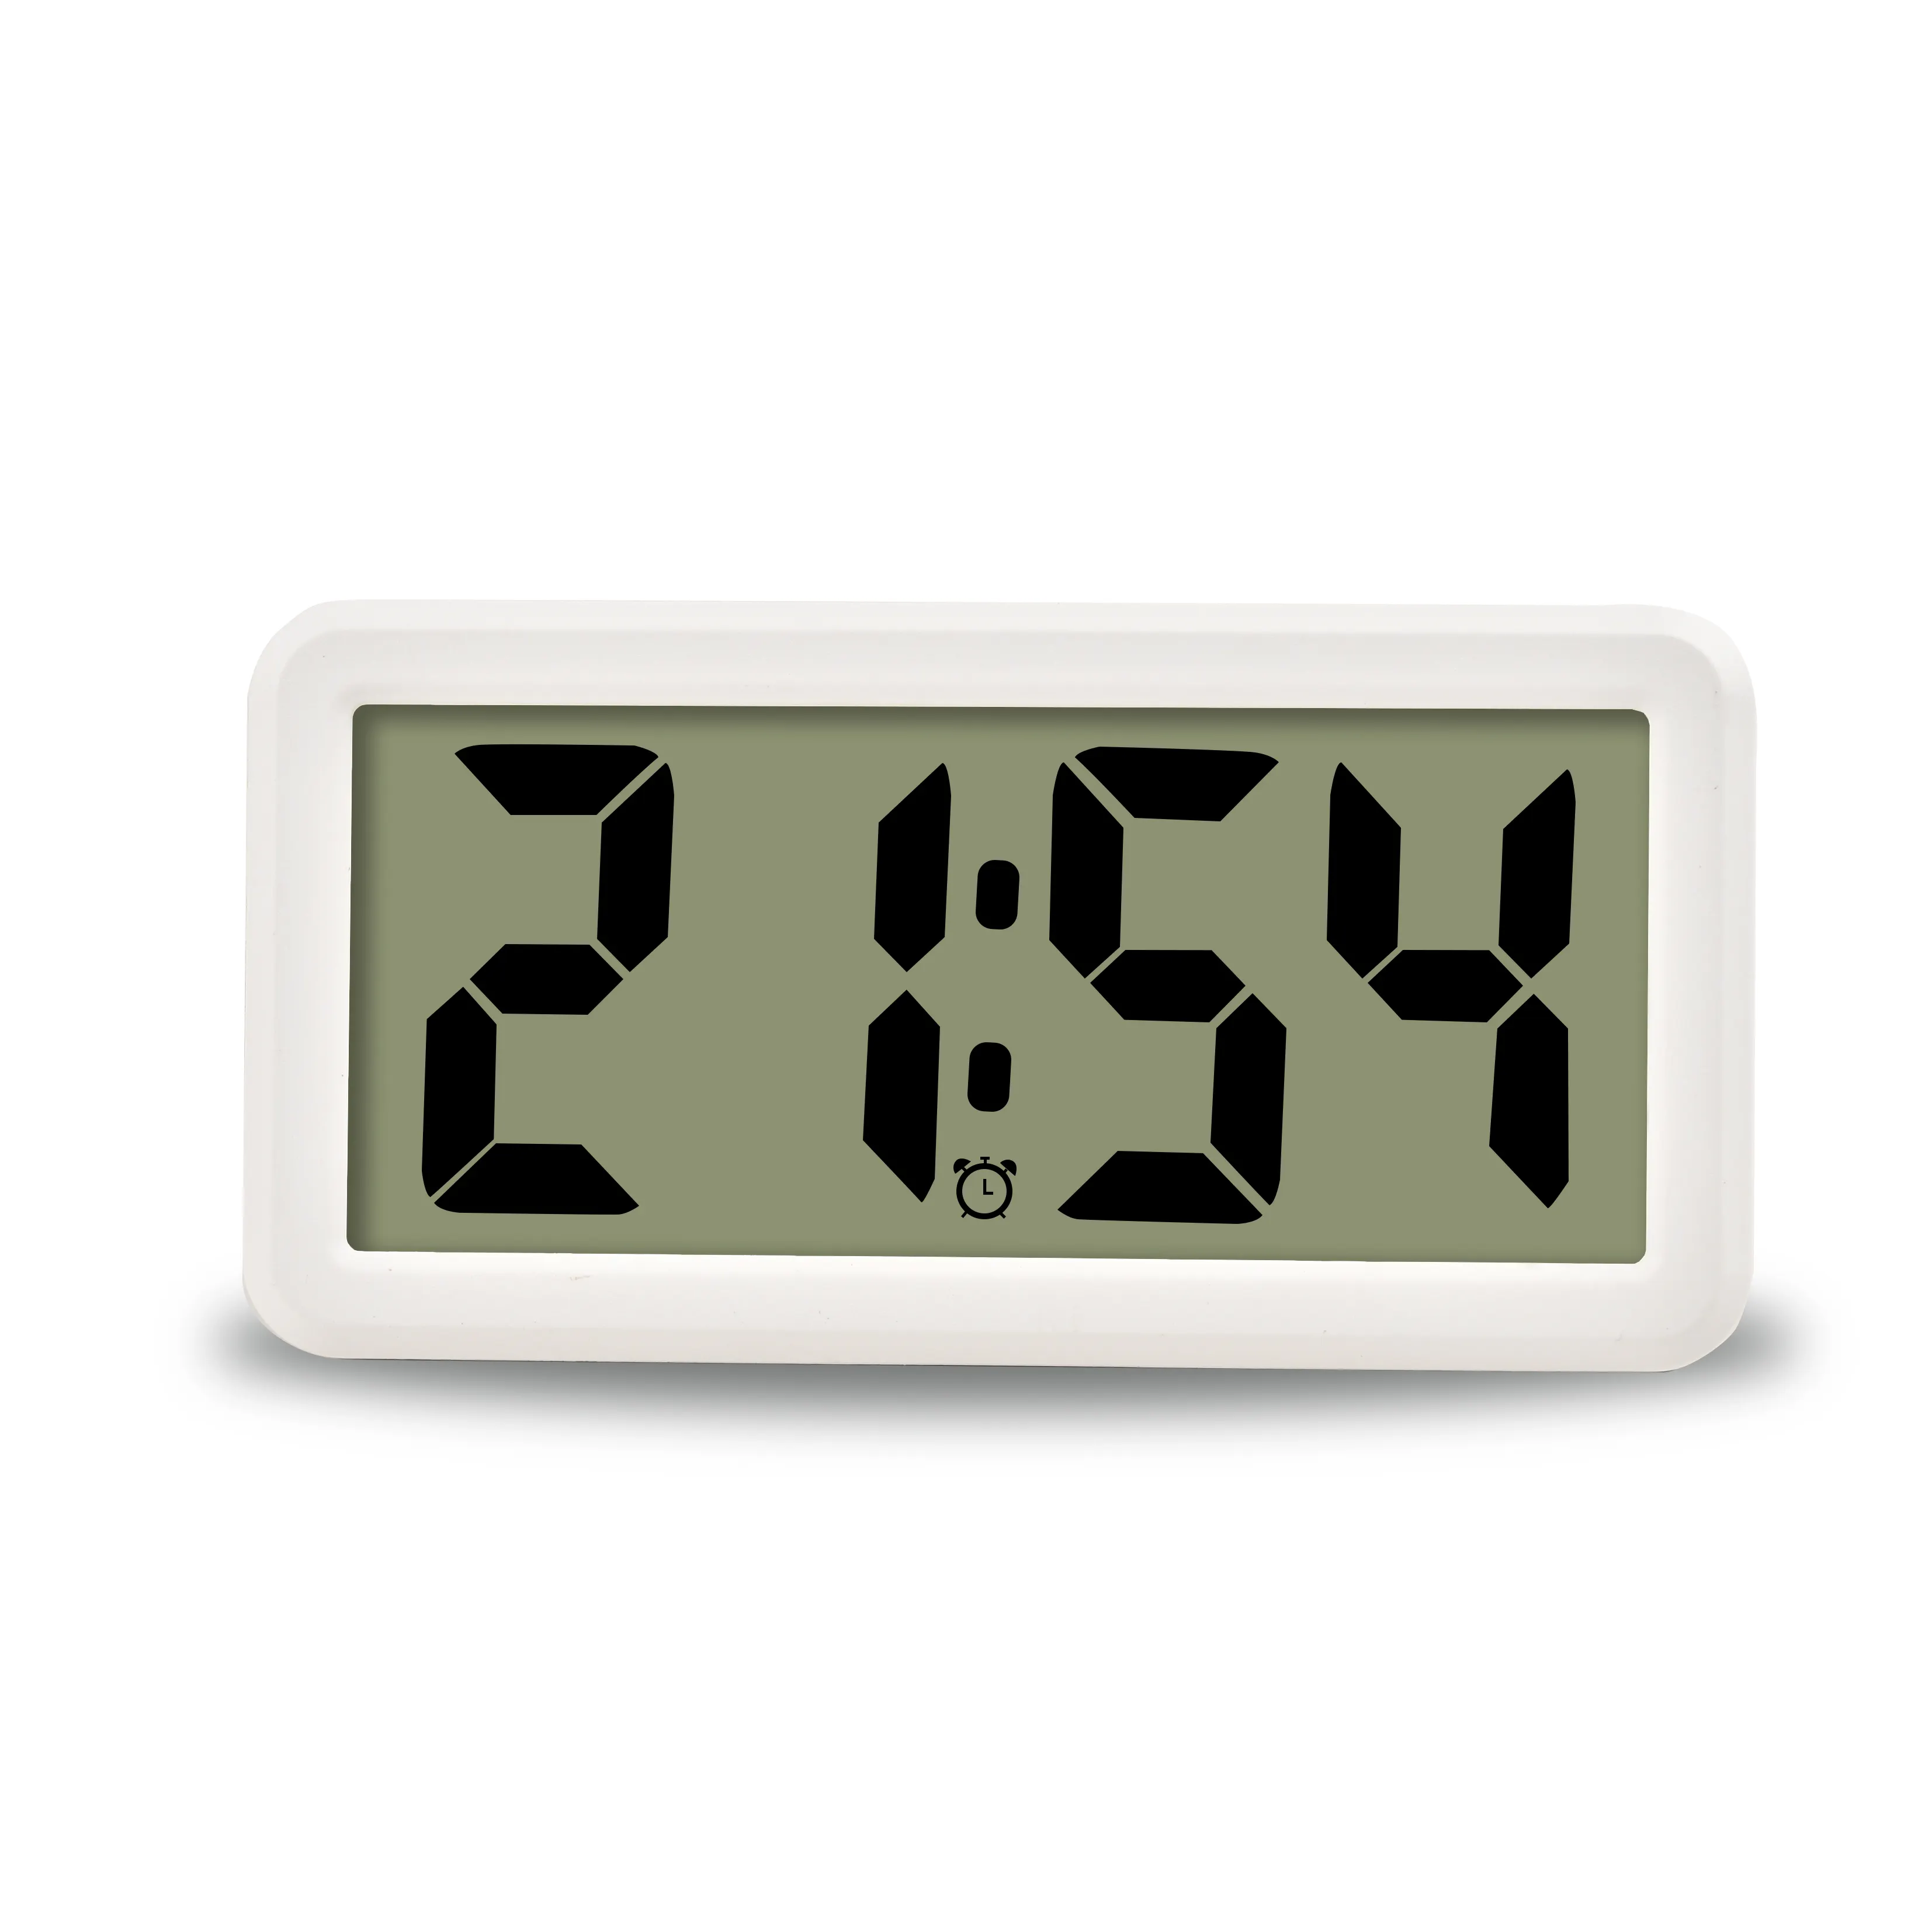 นาฬิกาตั้งโต๊ะดิจิทัล,นาฬิกาปลุกหน้าจอ LCD สีขาวสร้างสรรค์สำหรับออฟฟิศห้องนอน